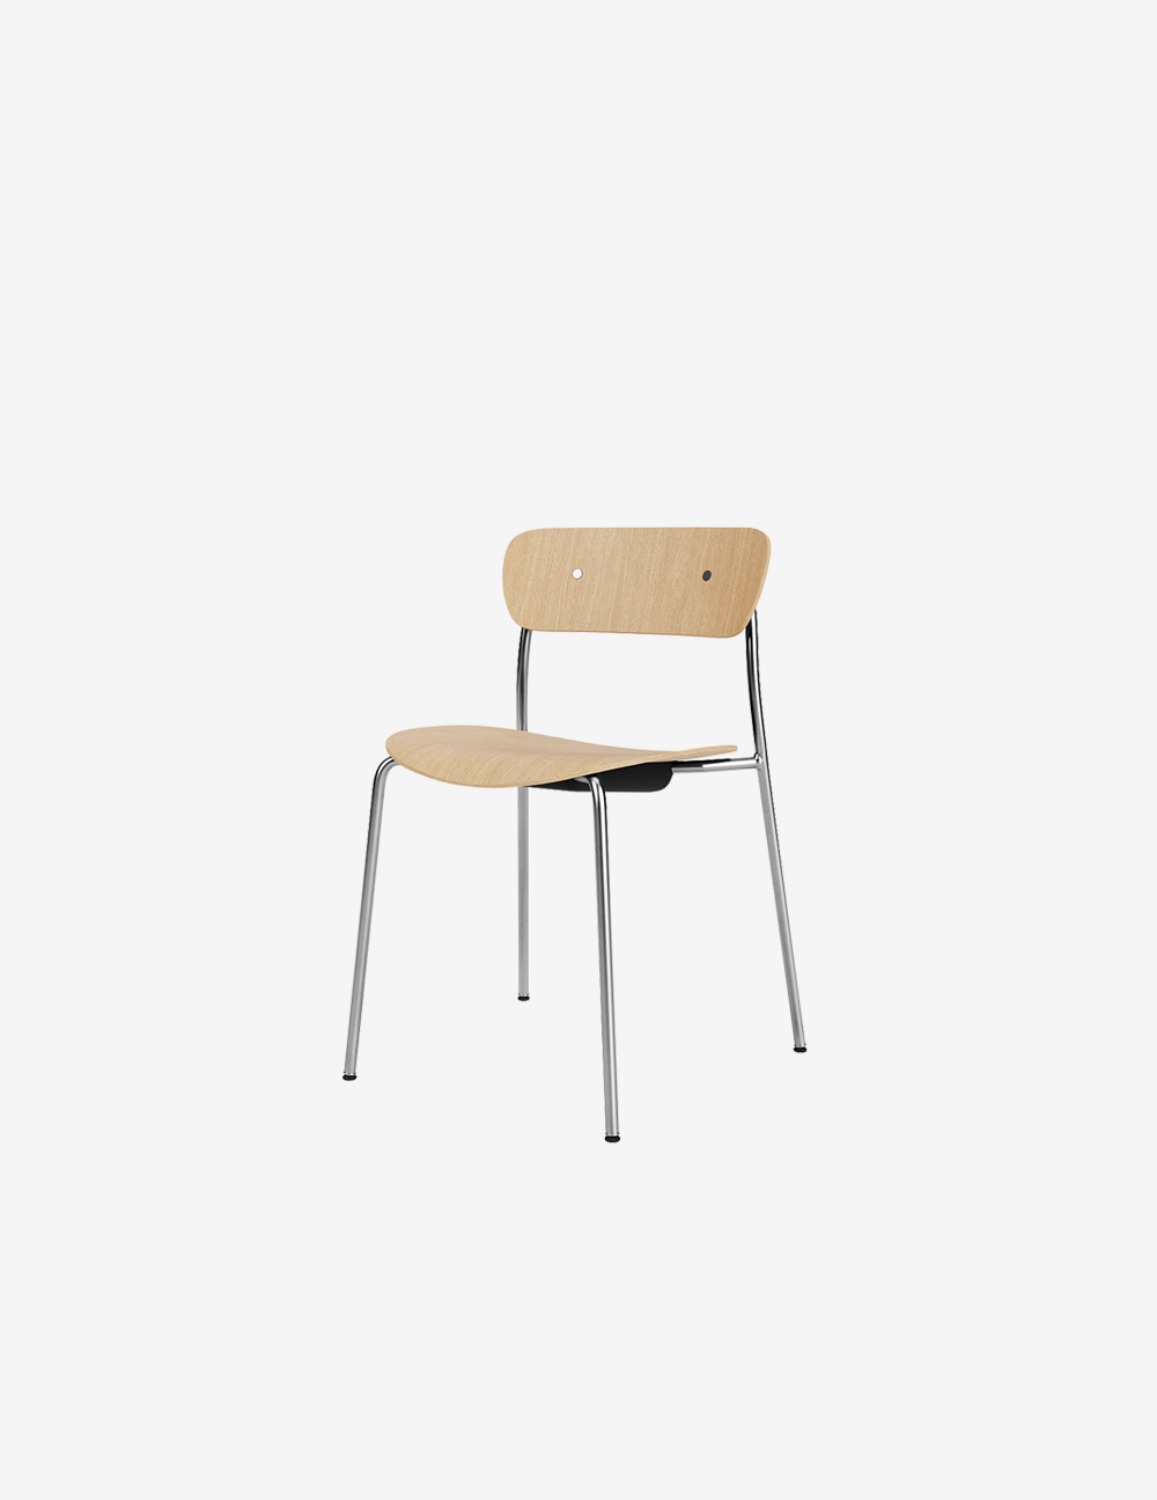 [Andtradition] Pavilion chair / AV1 (Oak/ Chrome)